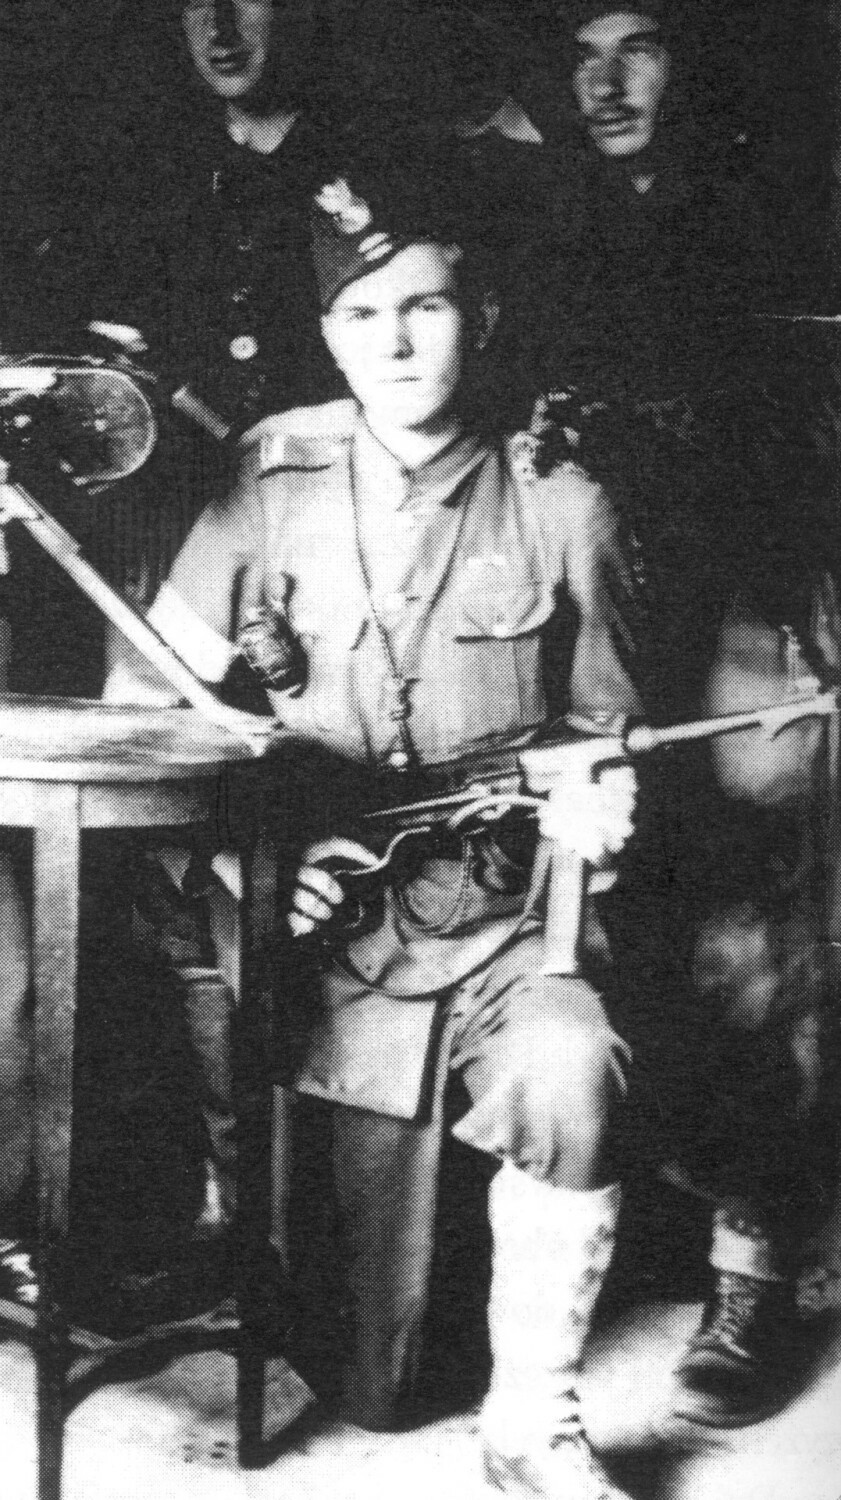 Jan Domaniewski w trakcie powstania - 1944 rok